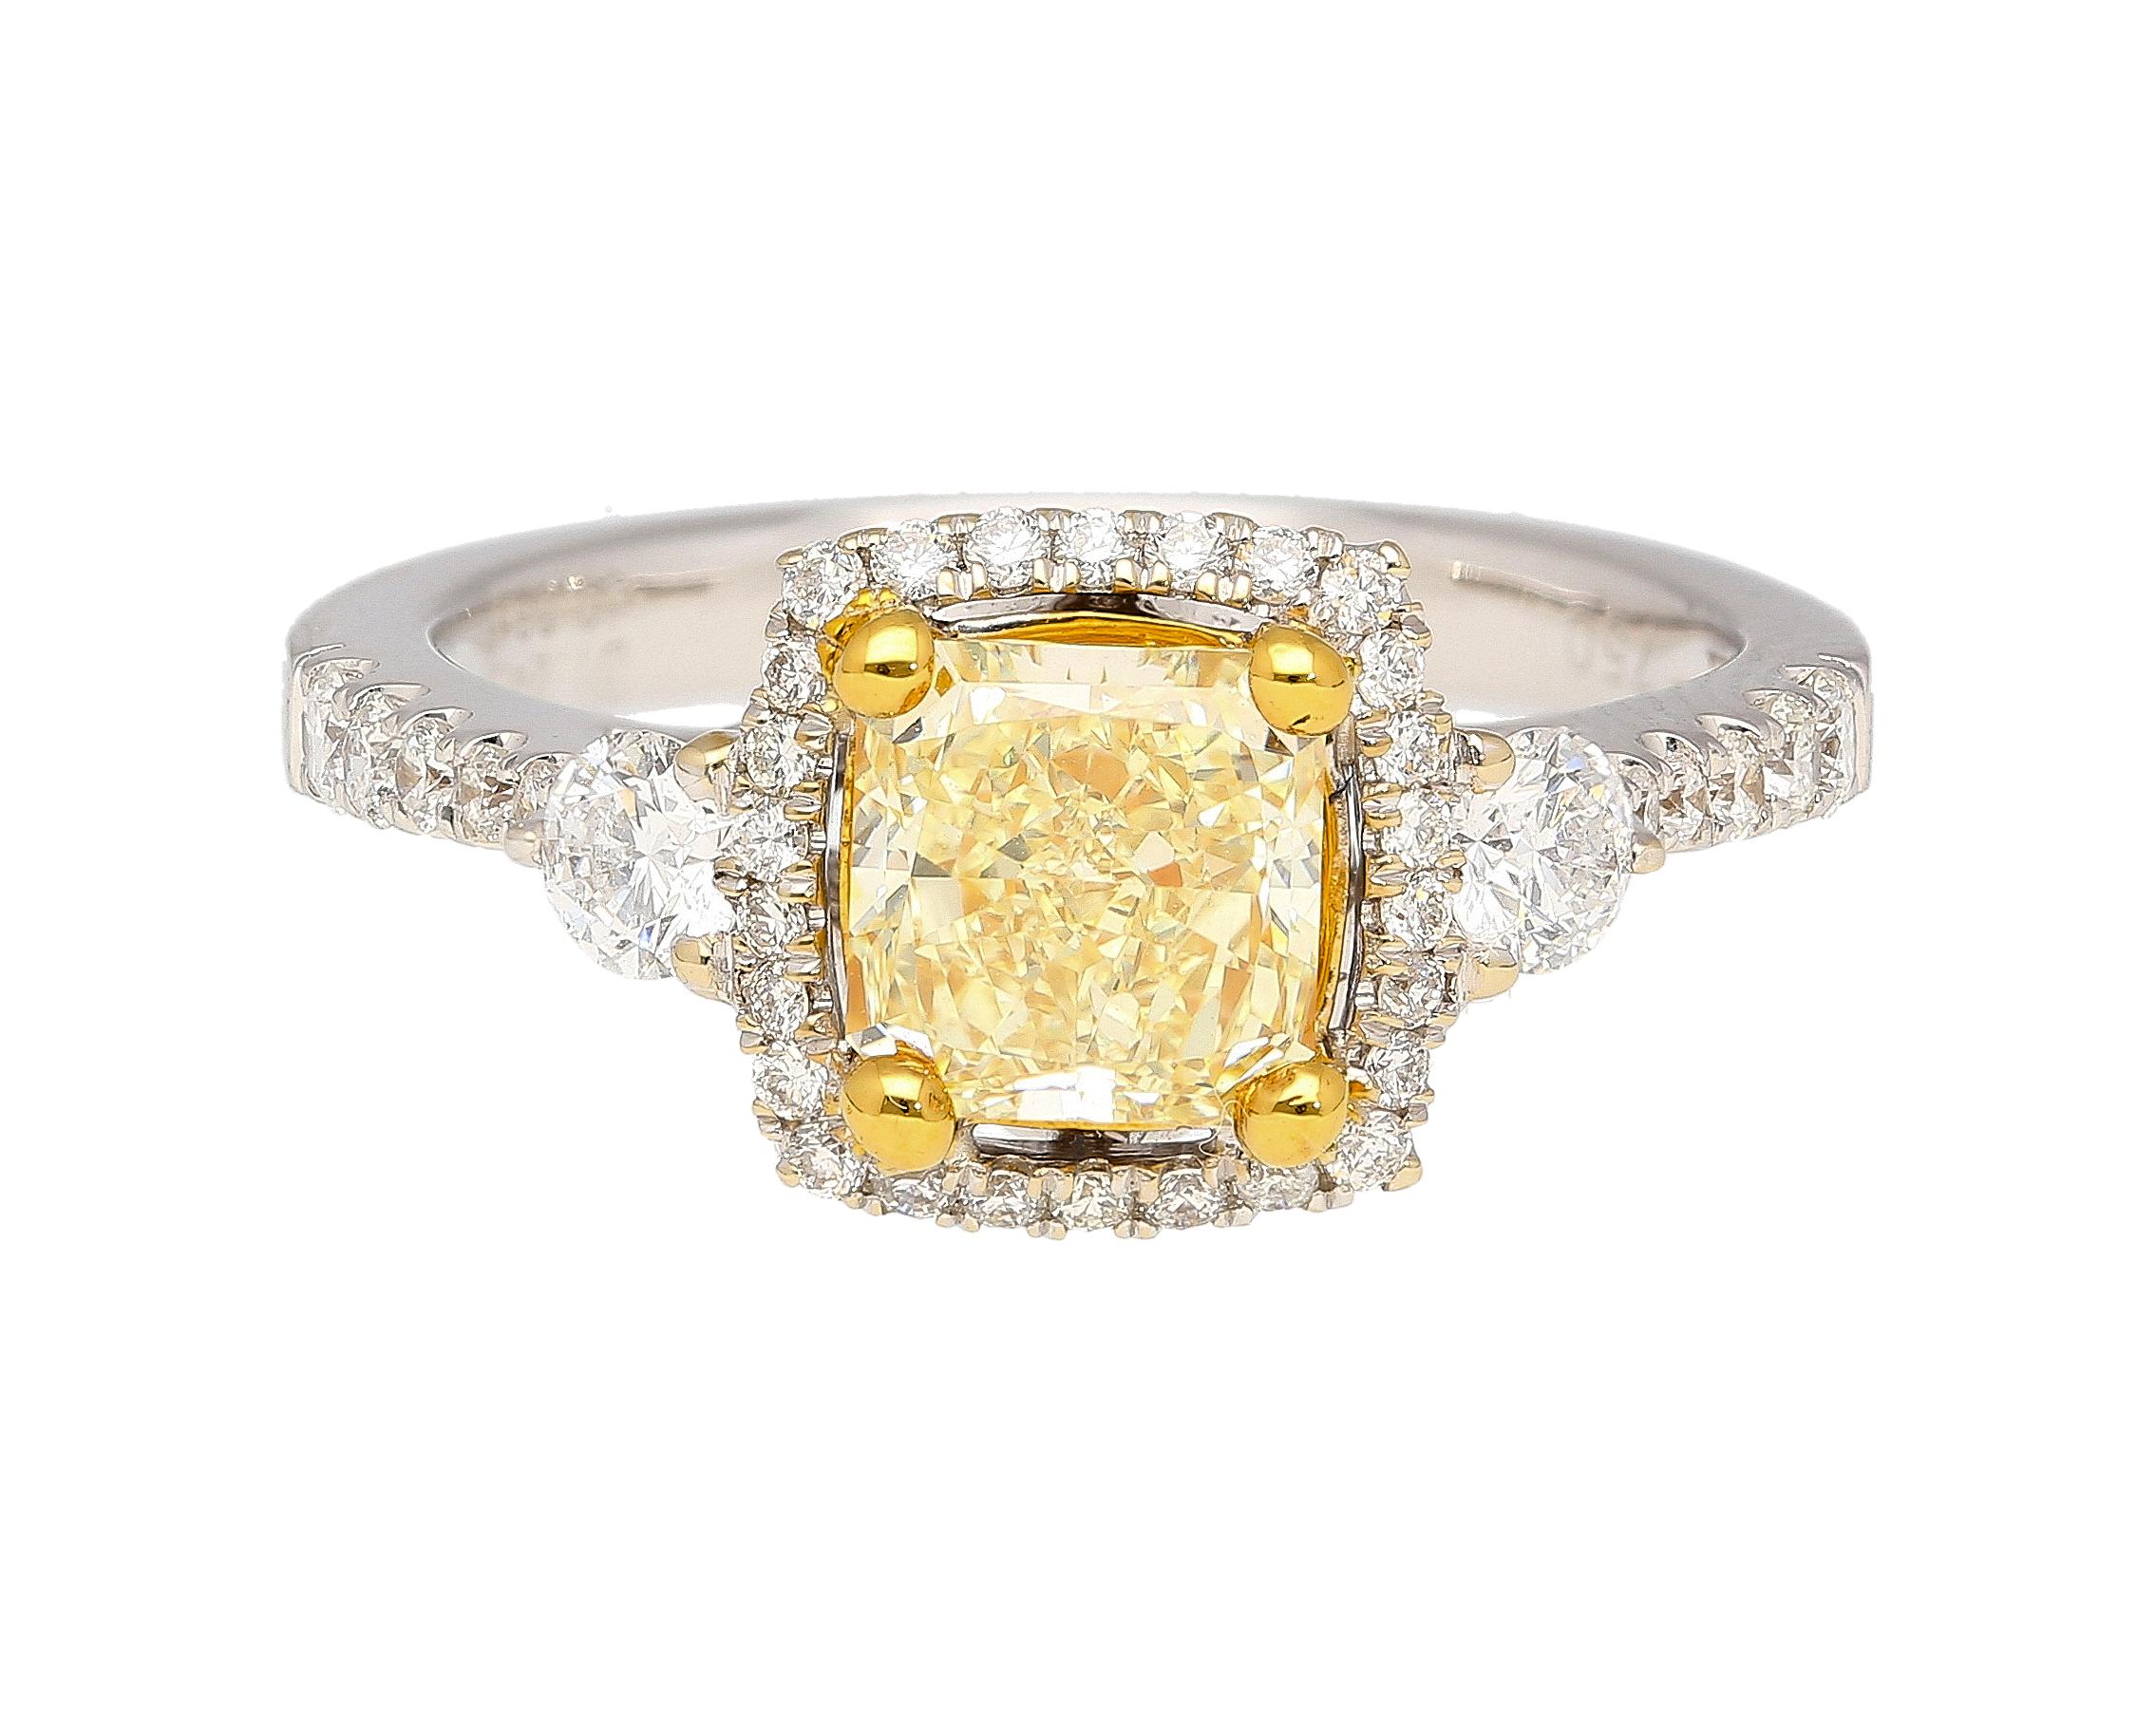 Bague de fiançailles en or blanc et jaune 18 carats certifiée GIA de 1,24 carat de diamant radiant Fancy Yellow. La pierre est certifiée par le GIA comme étant de couleur Y-Z, ce qui signifie qu'elle présente une teinte jaune proche de la couleur